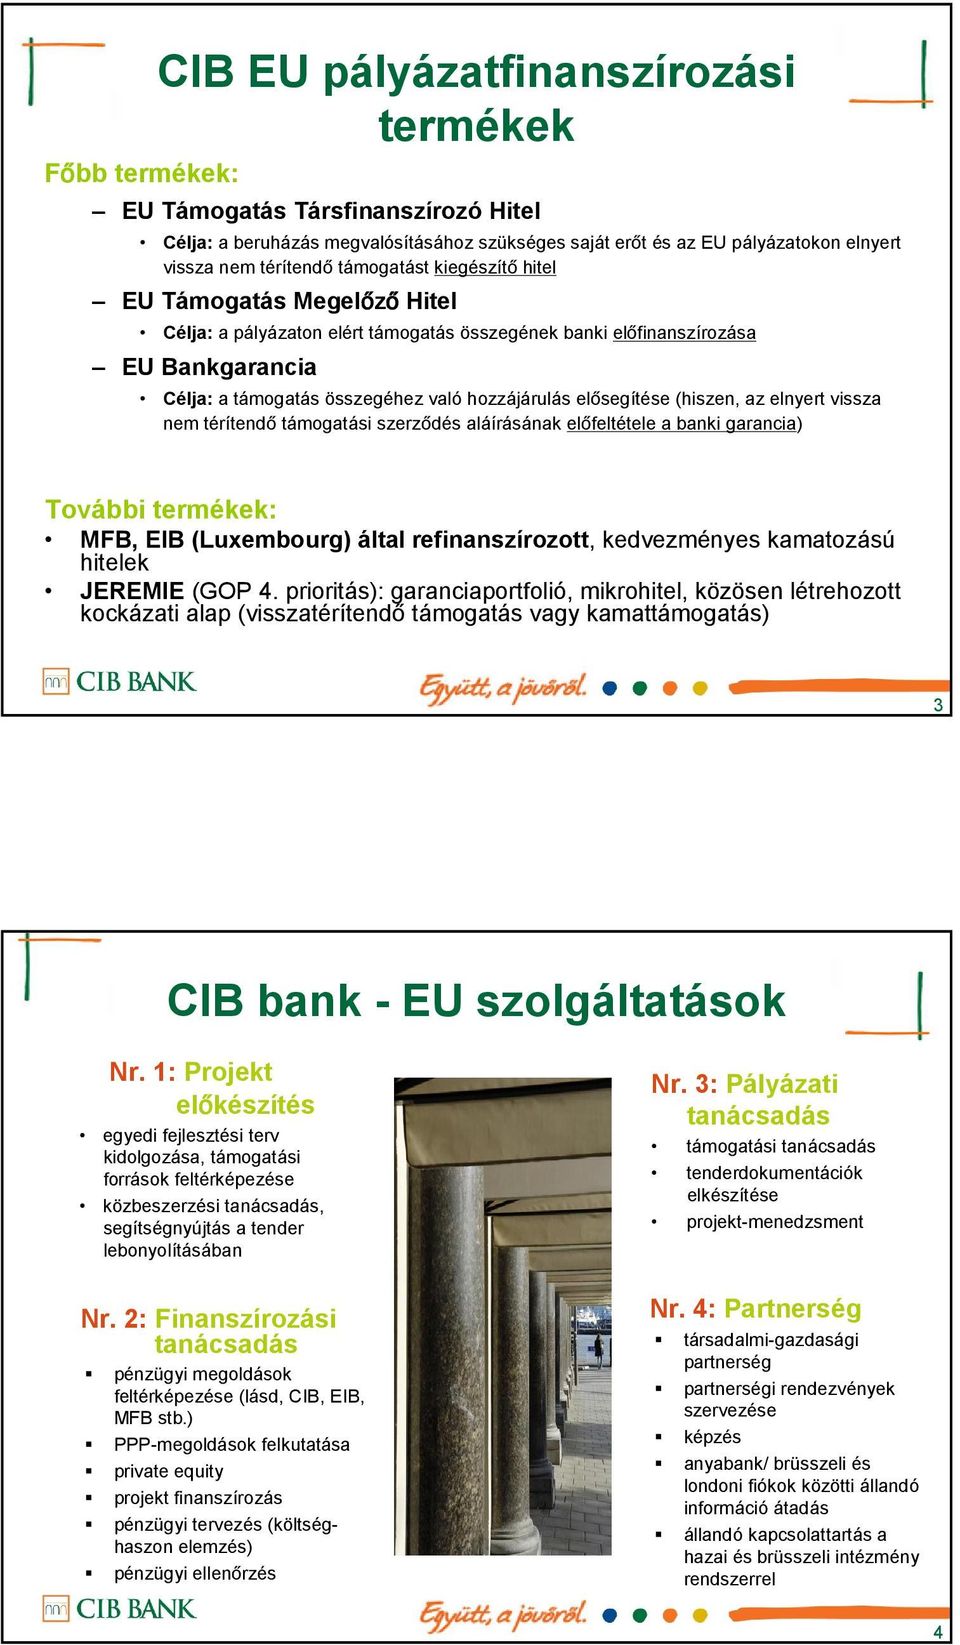 elősegítése (hiszen, az elnyert vissza nem térítendő támogatási szerződés aláírásának előfeltétele a banki garancia) További termékek:, EIB (Luxembourg) által refinanszírozott, kedvezményes